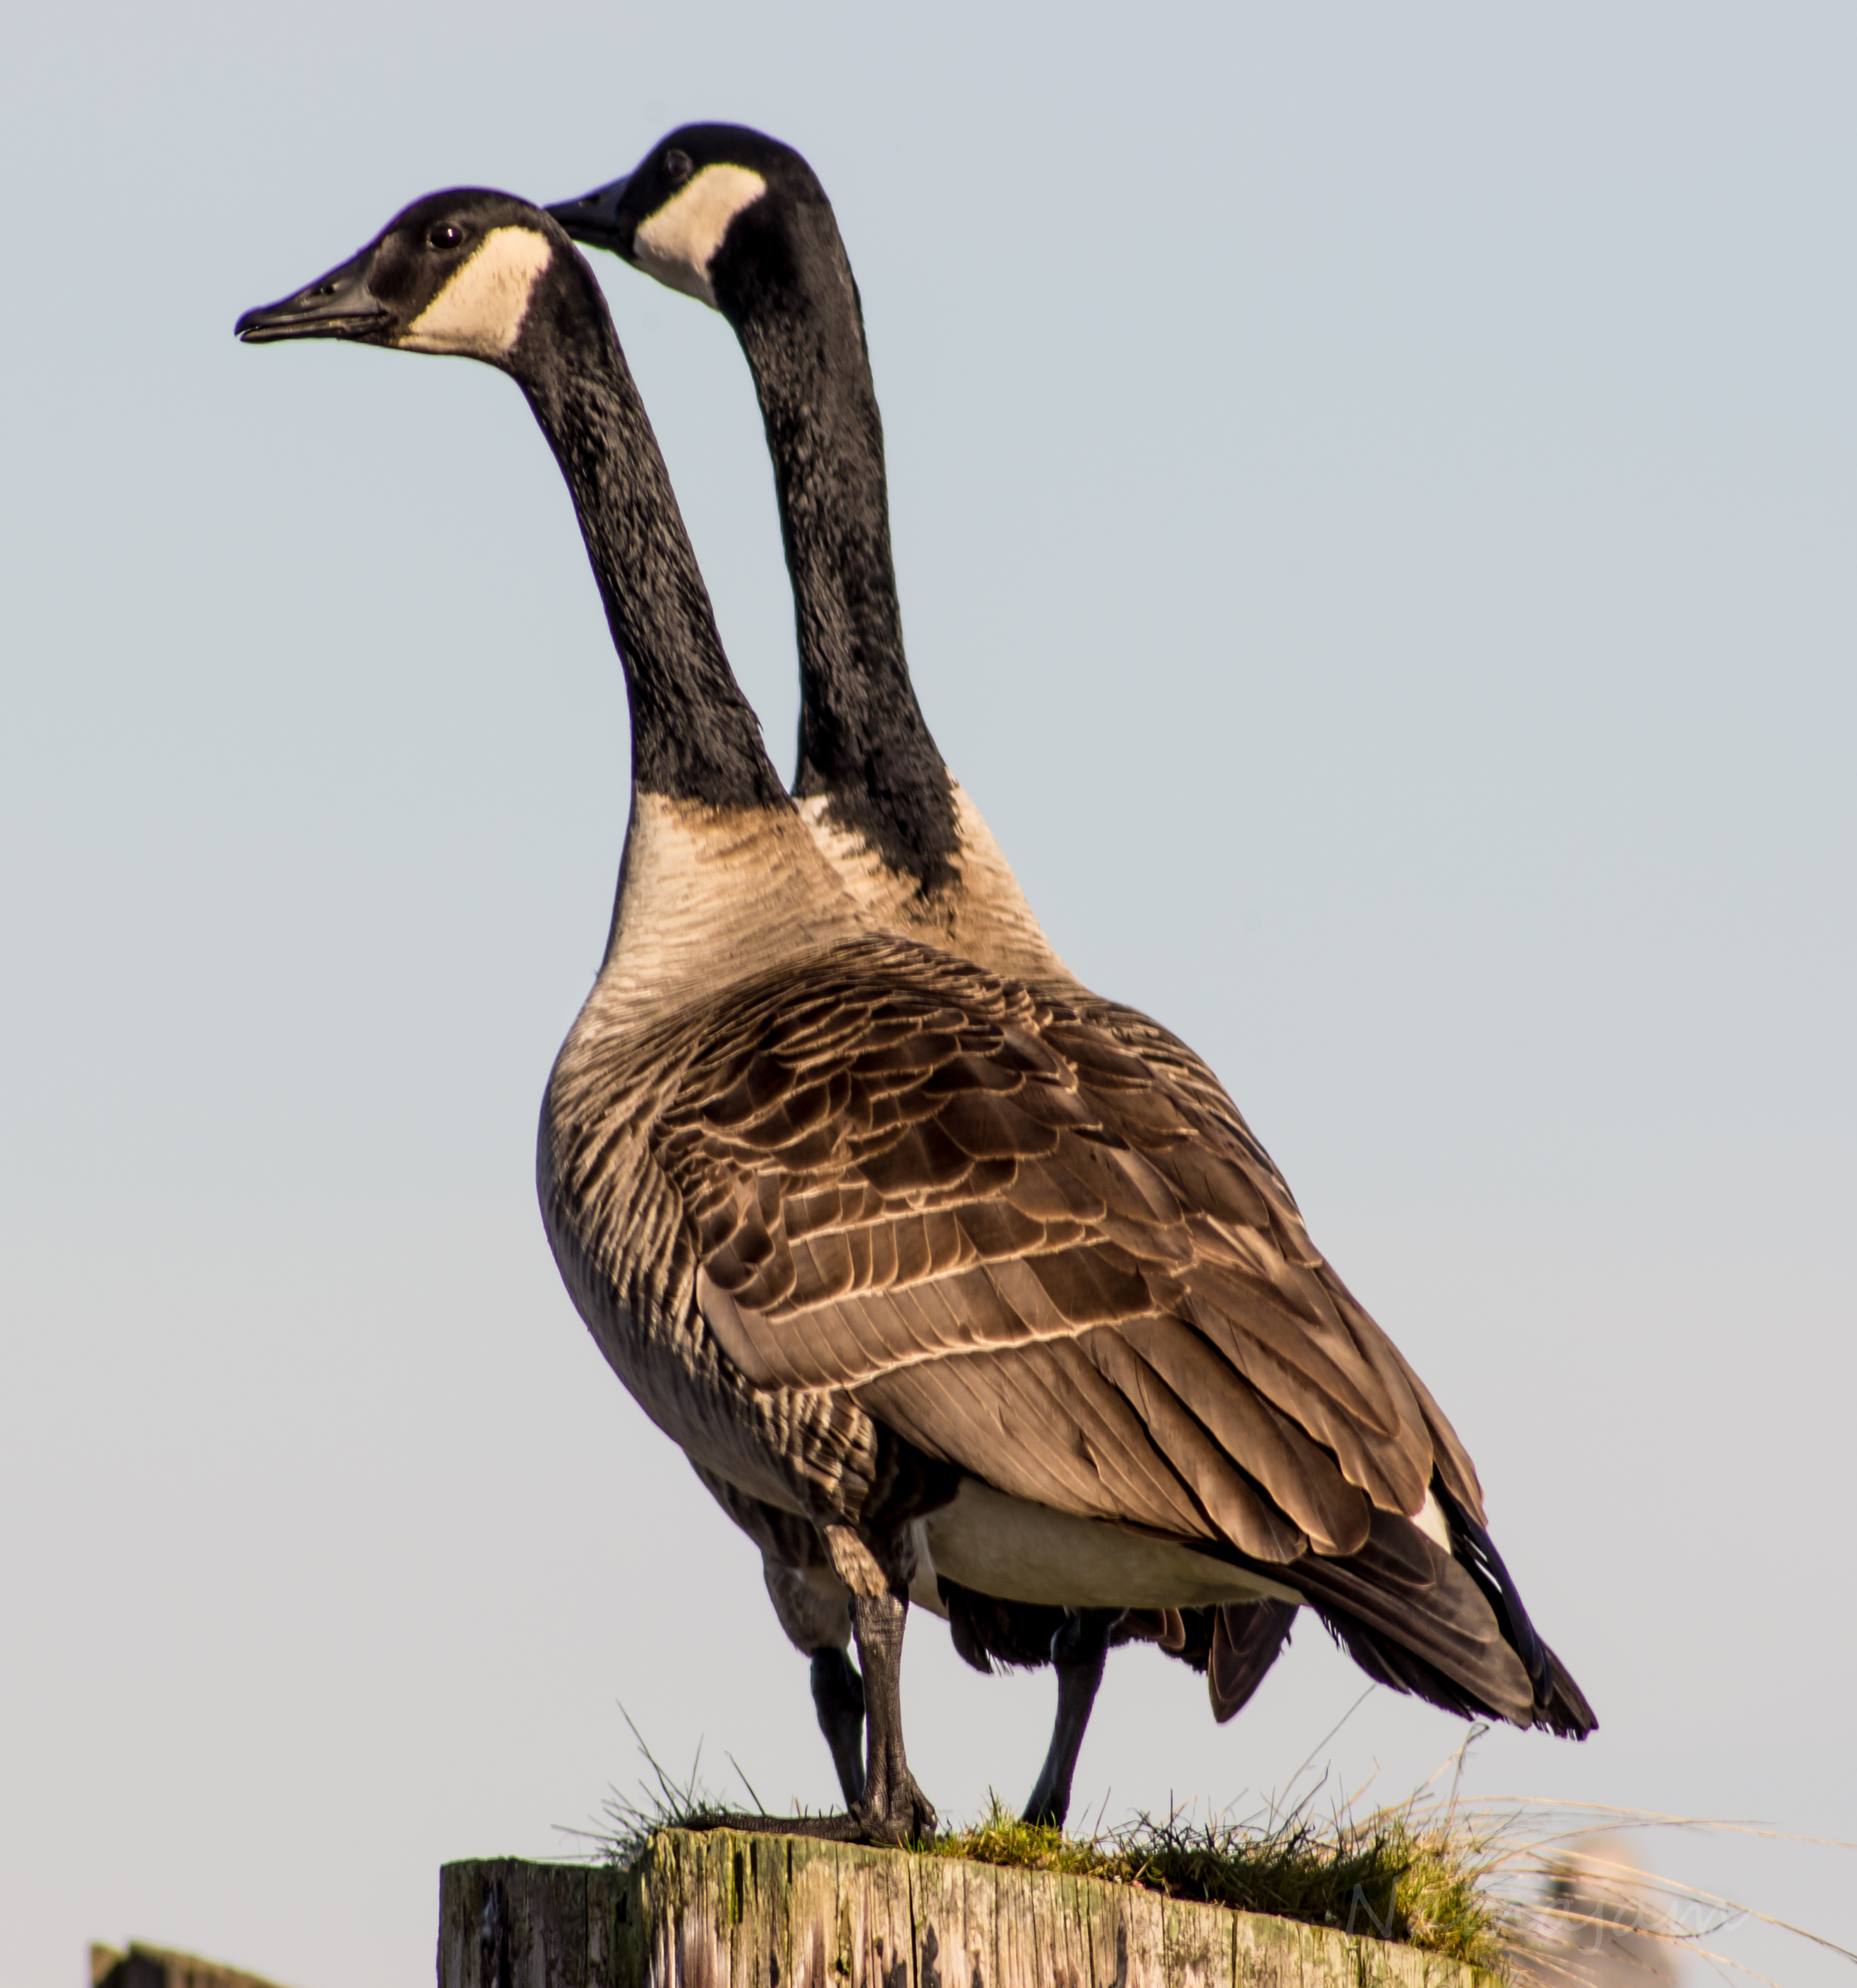 Canadian Geese/Goose | namajamphotography